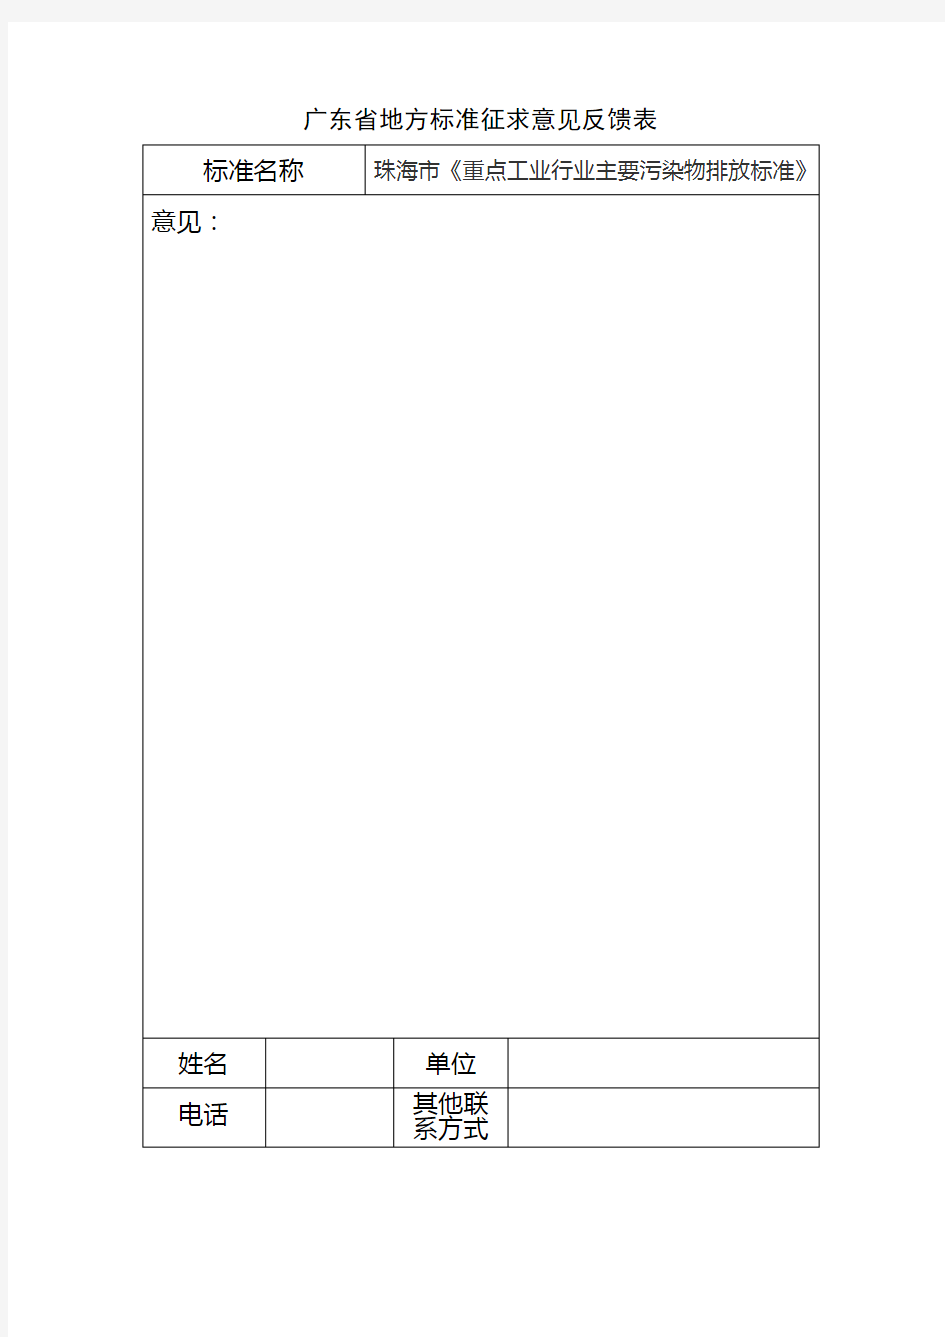 广东省地方标准征求意见反馈表